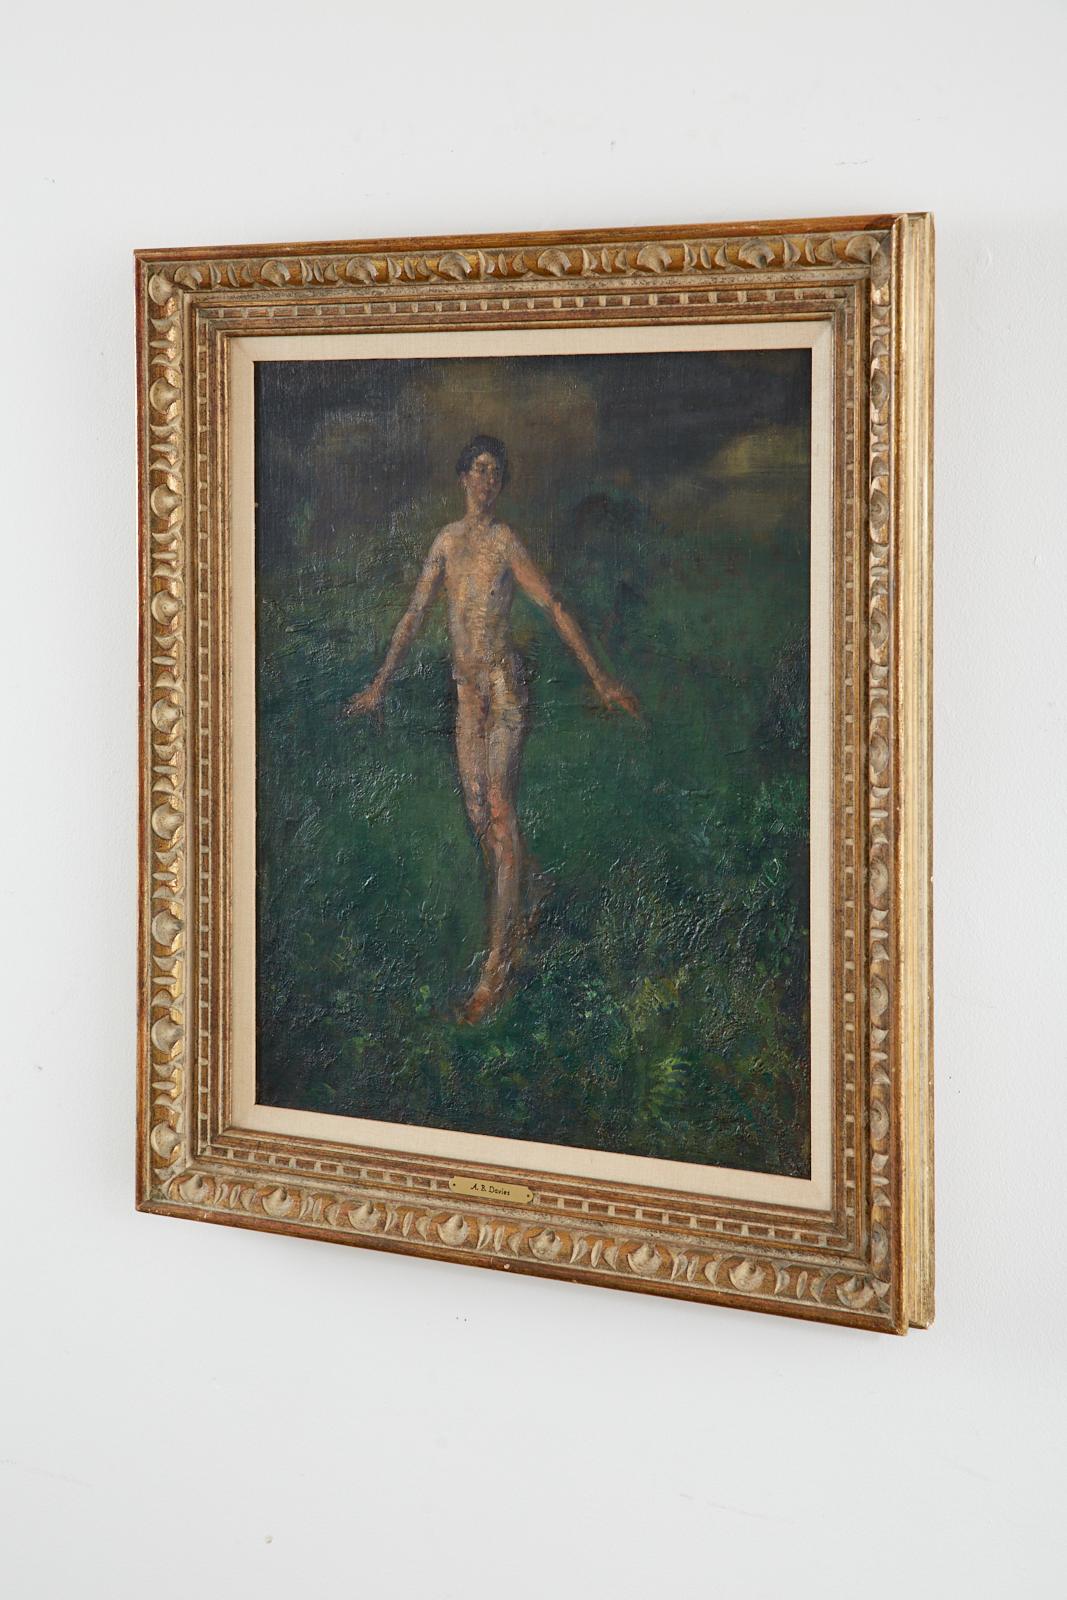 Exquisites Gemälde in Öl auf Leinwand des Künstlers Arthur Bowen Davies (Amerikaner 1862-1928). Das Werk zeigt einen jungen nackten Mann, der durch eine üppige grüne, ätherische Landschaft geht. Dicke Pinselstriche in Erdtönen sind übereinander